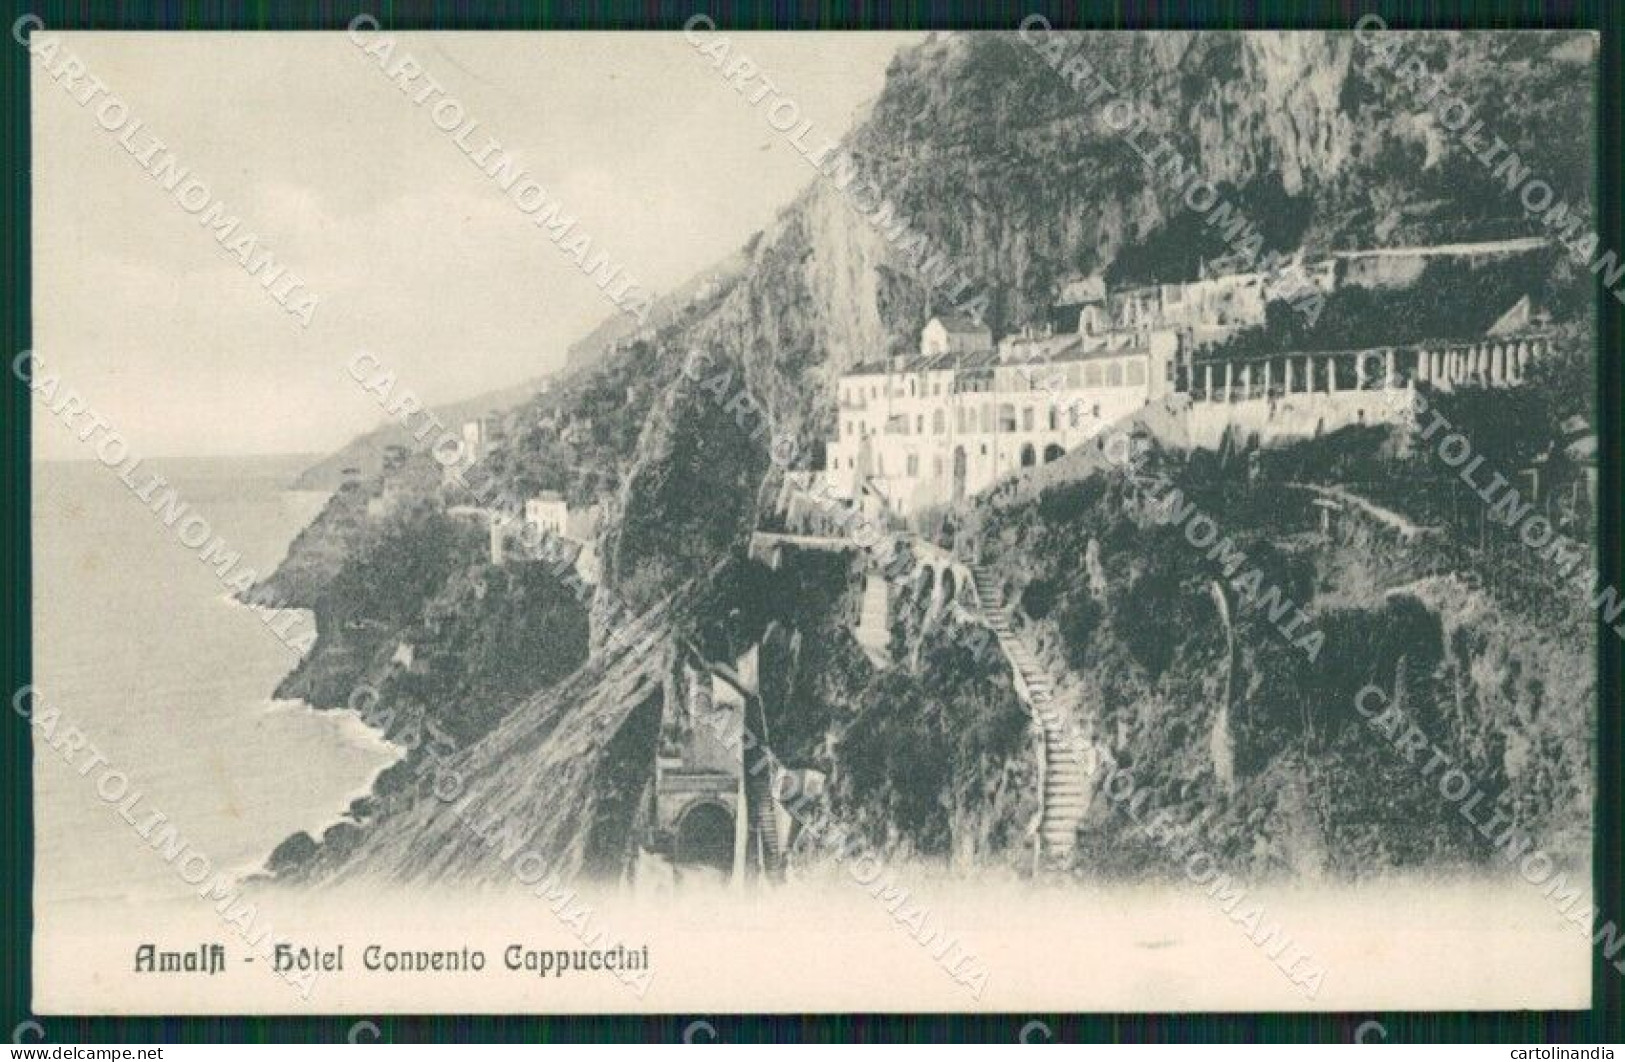 Salerno Amalfi Cartolina KV3572 - Salerno